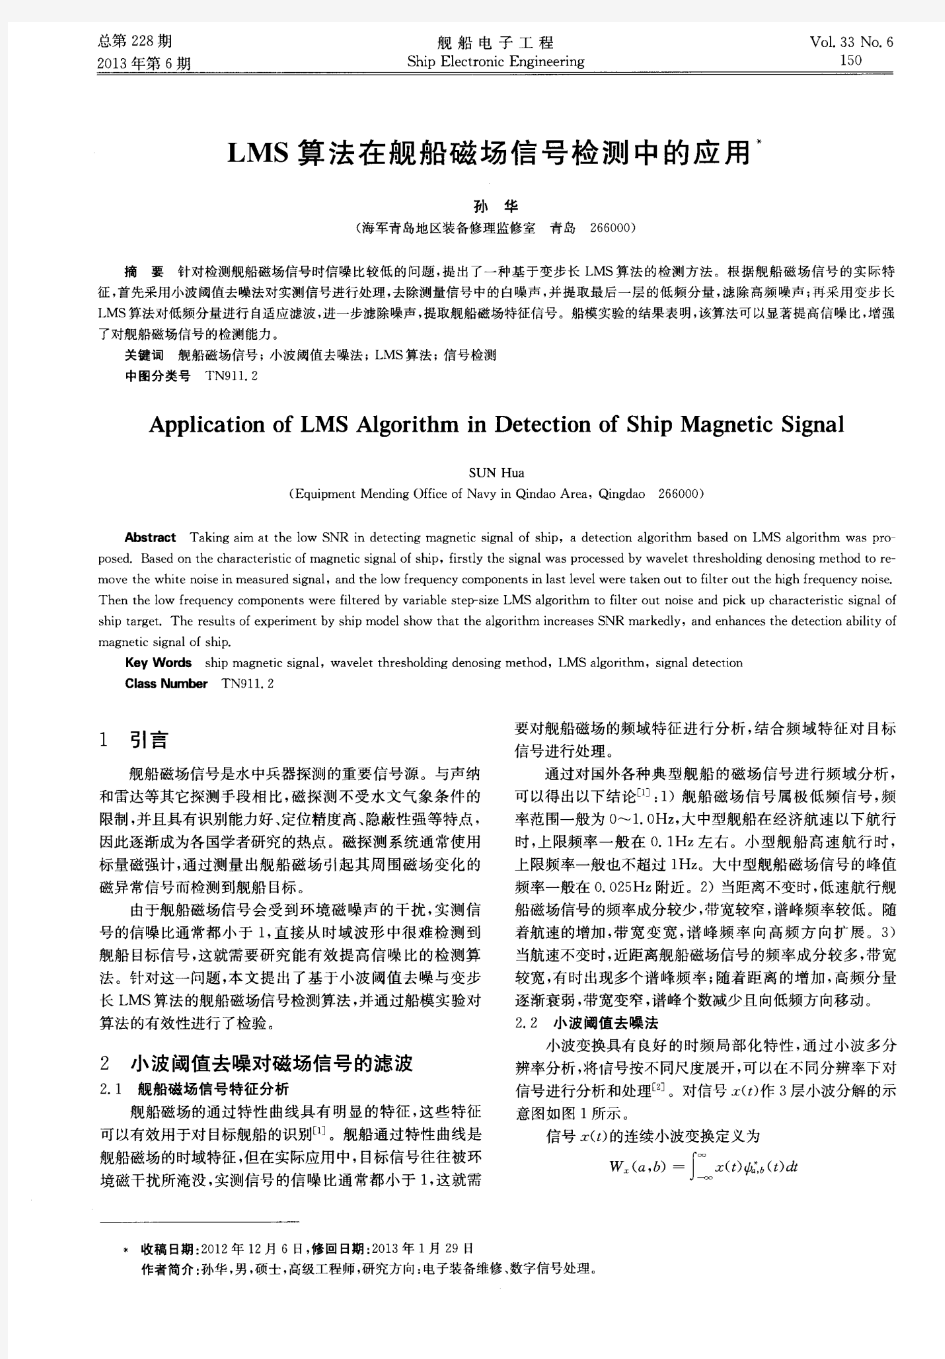 LMS算法在舰船磁场信号检测中的应用